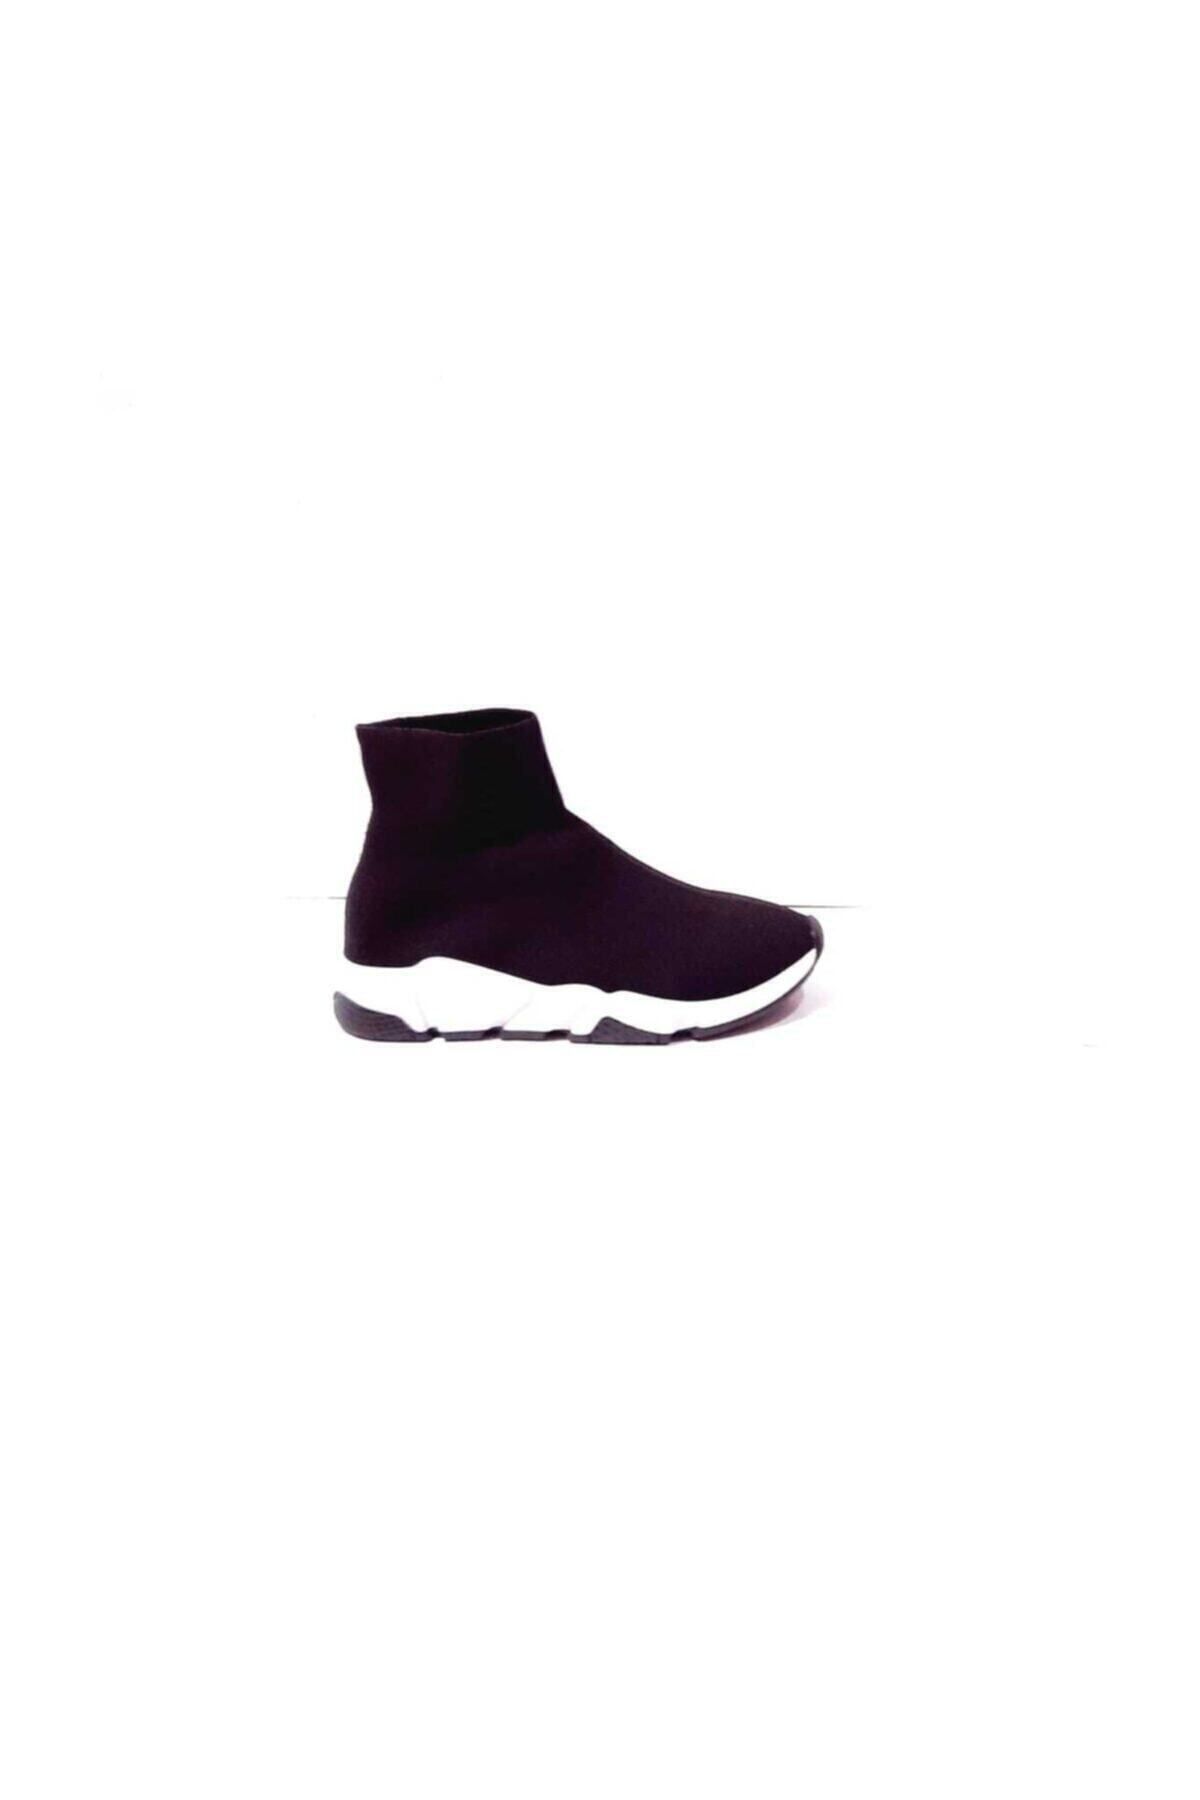 Zen Spor Unisex Siyah Çorap Model Sneaker Ayakkabı - Geniş Kalıp